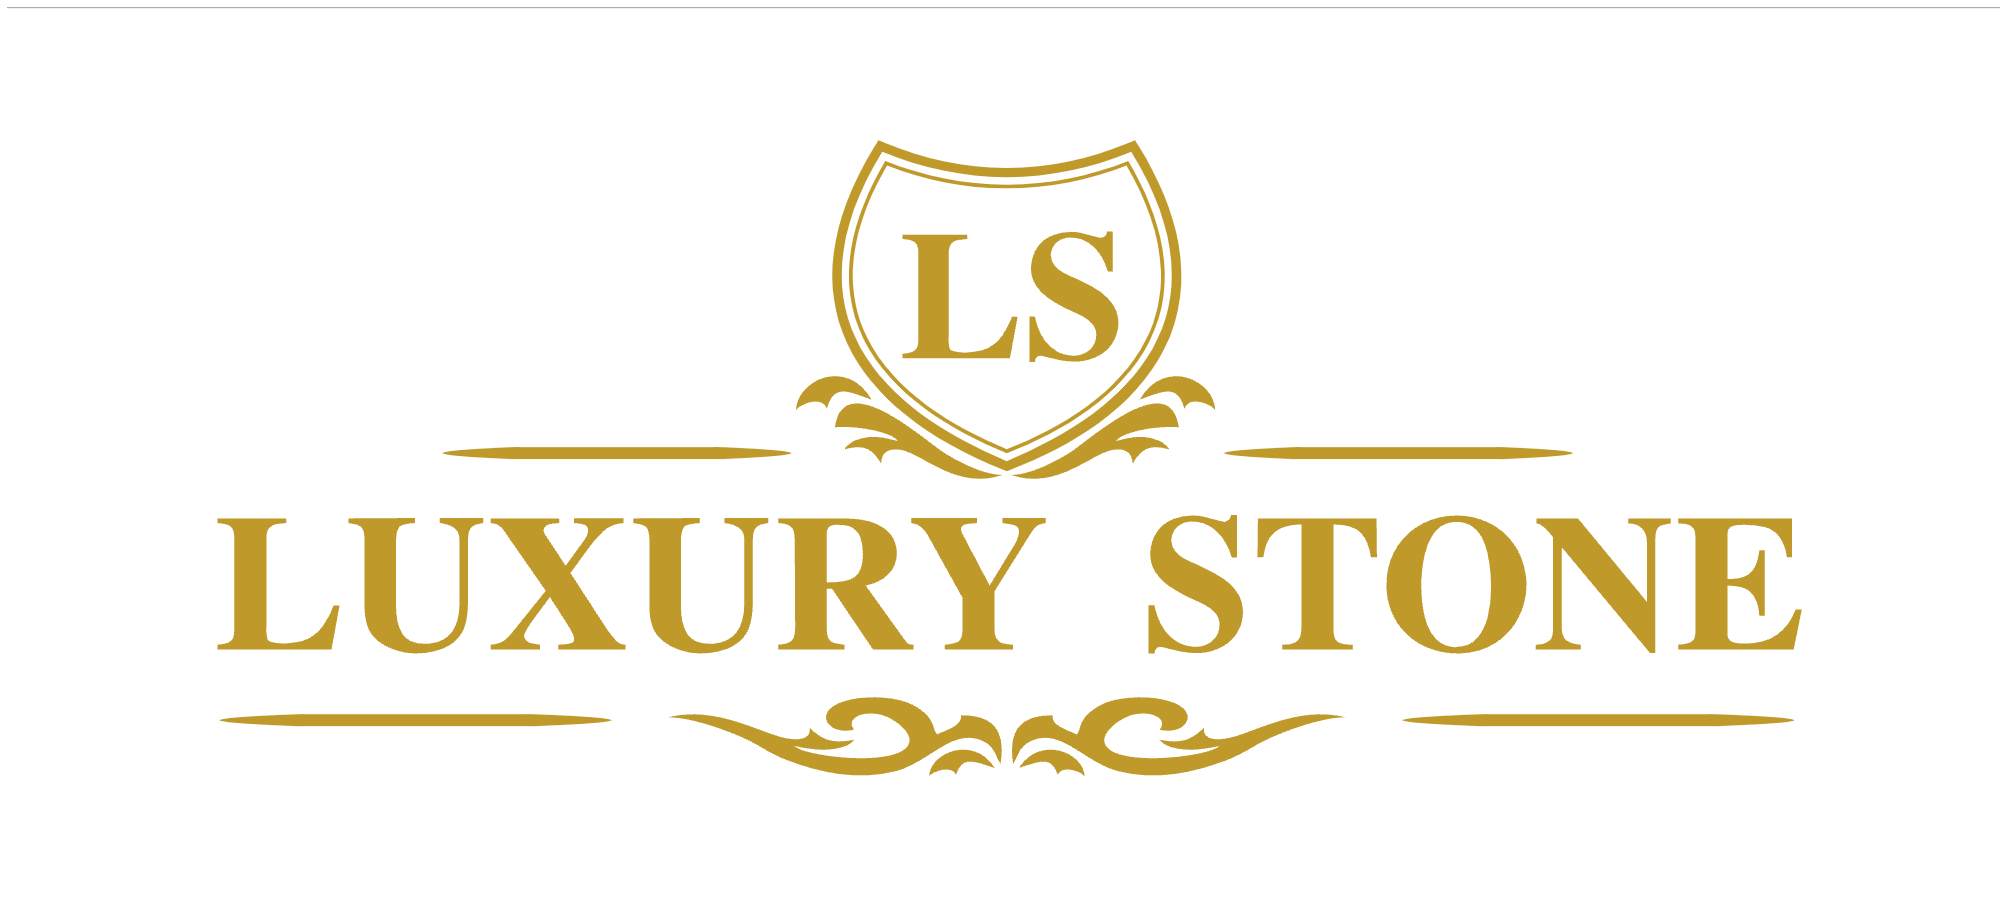 Luxury stones